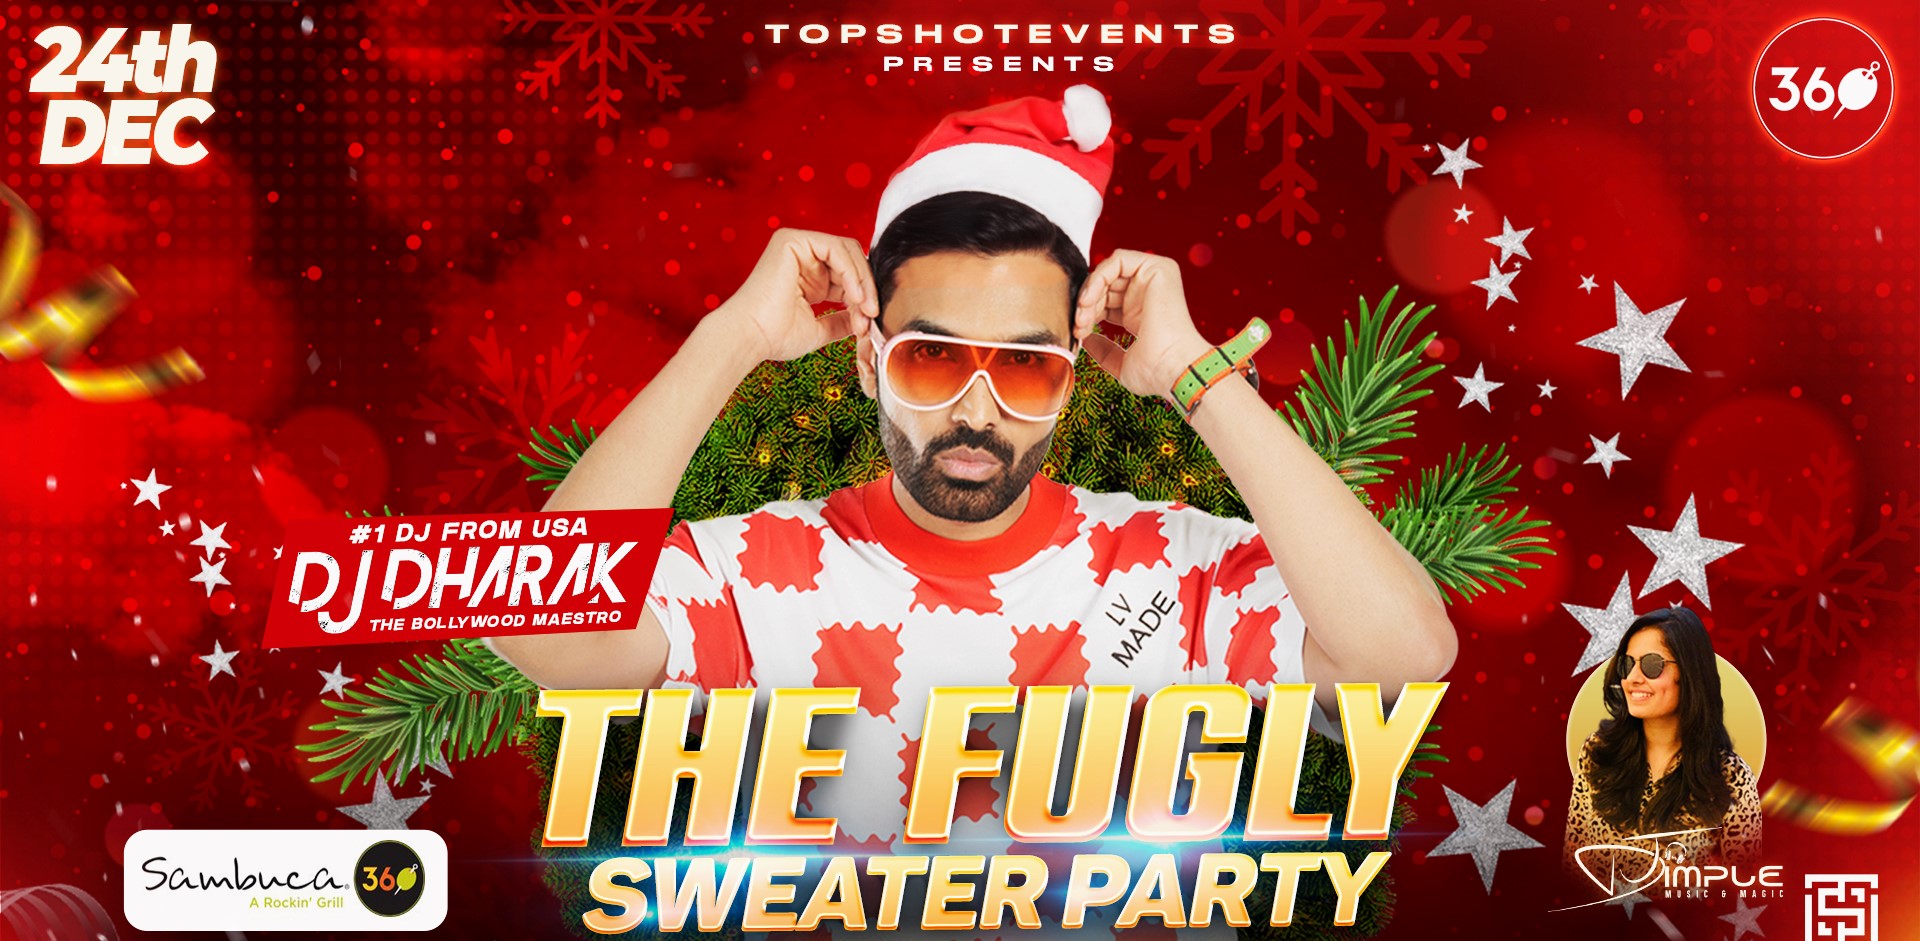 Fugly Sweater Party at Sambuca